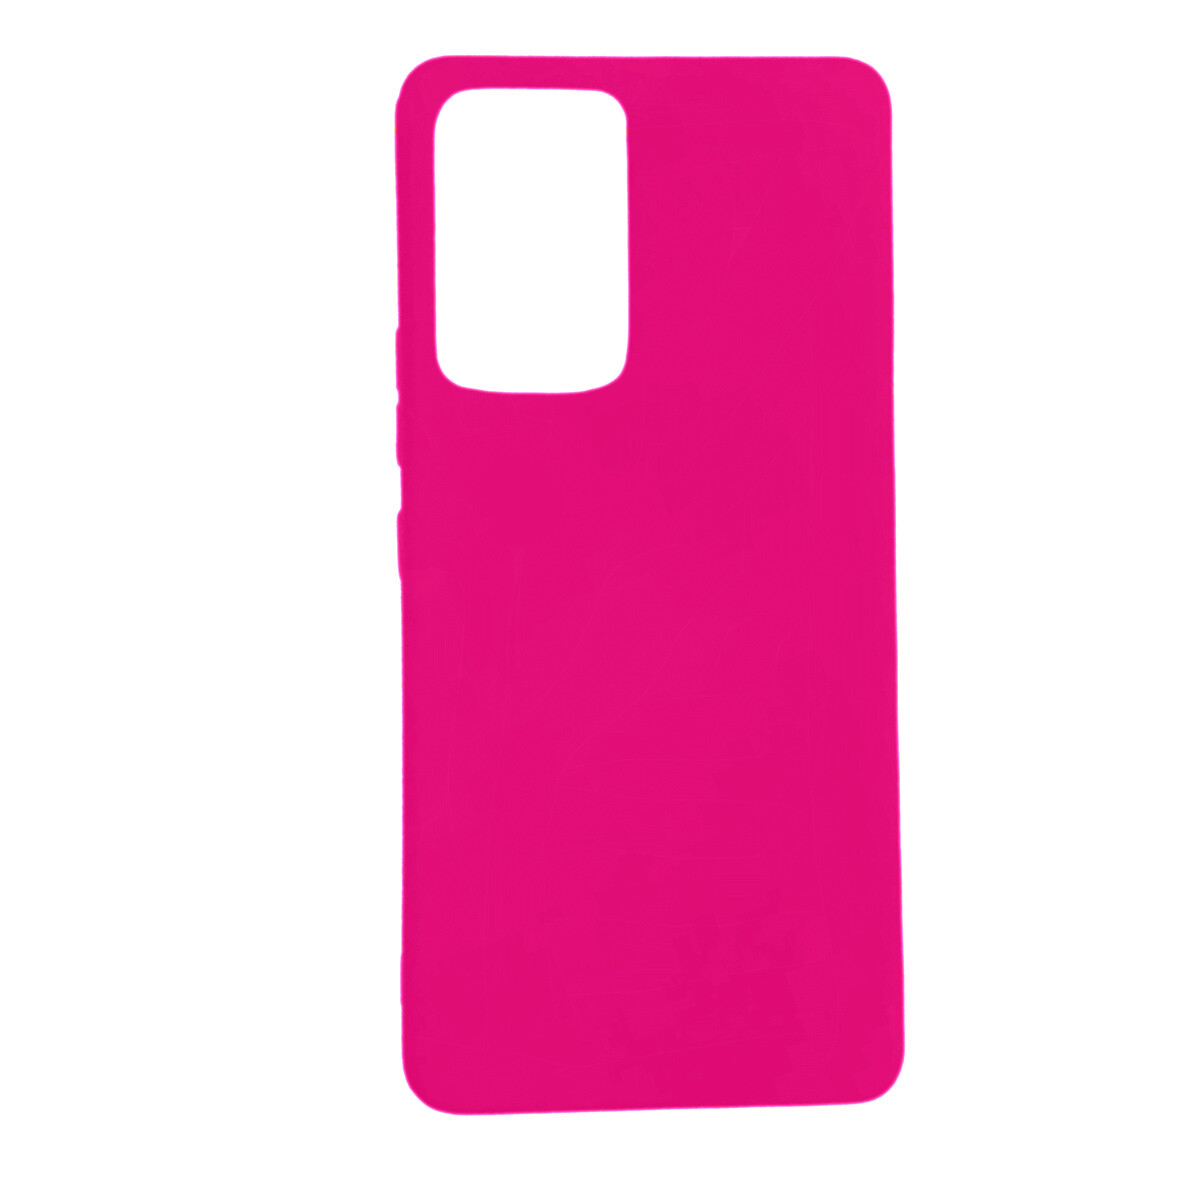 Protector Case de Silicona para Samsung Galaxy A53 5G - Rosa neon 